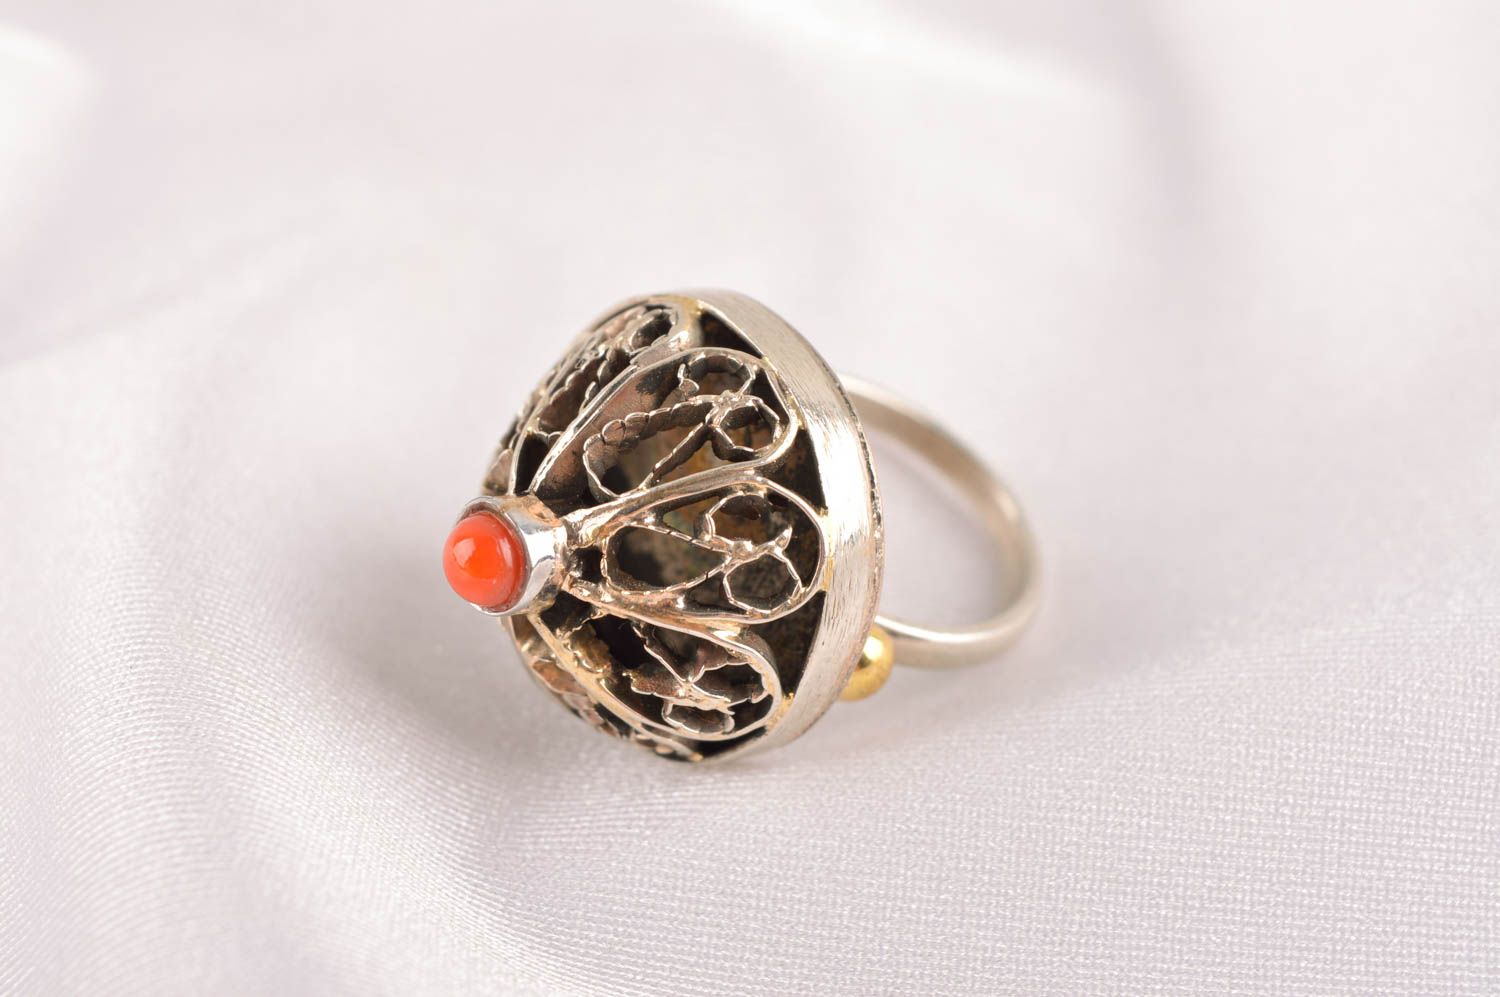 Vintage ring handmade metal brooch metal jewelry elegant ring for women photo 1